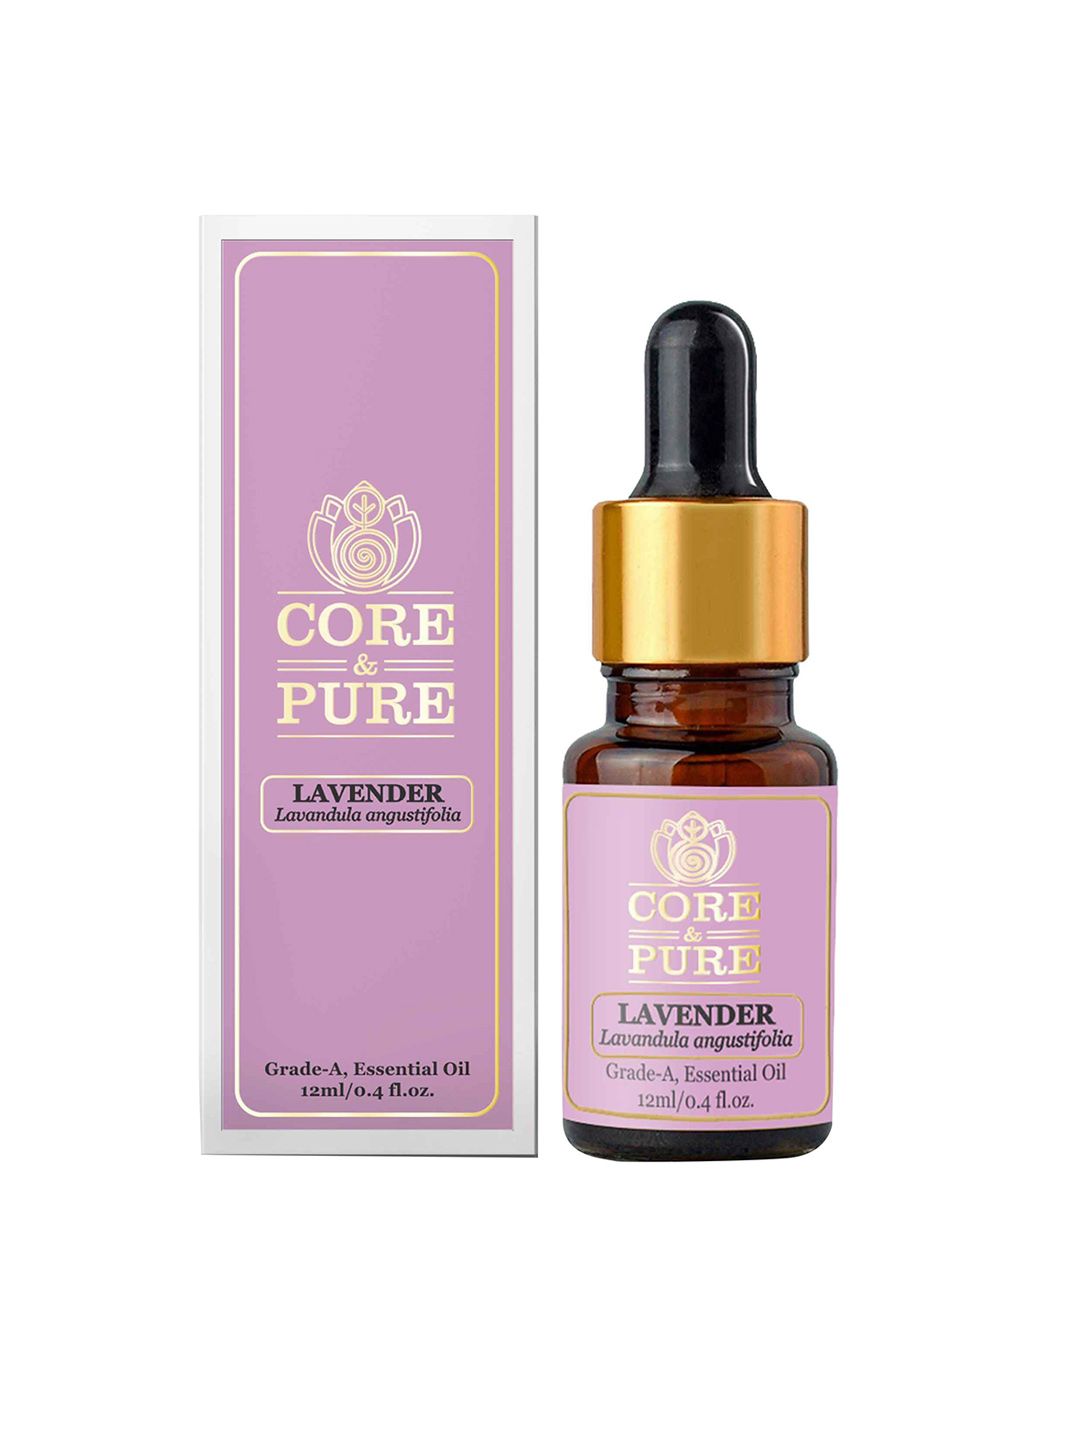 CORE & PURE Lavender Grade-A Essential Oil 12ml Price in India